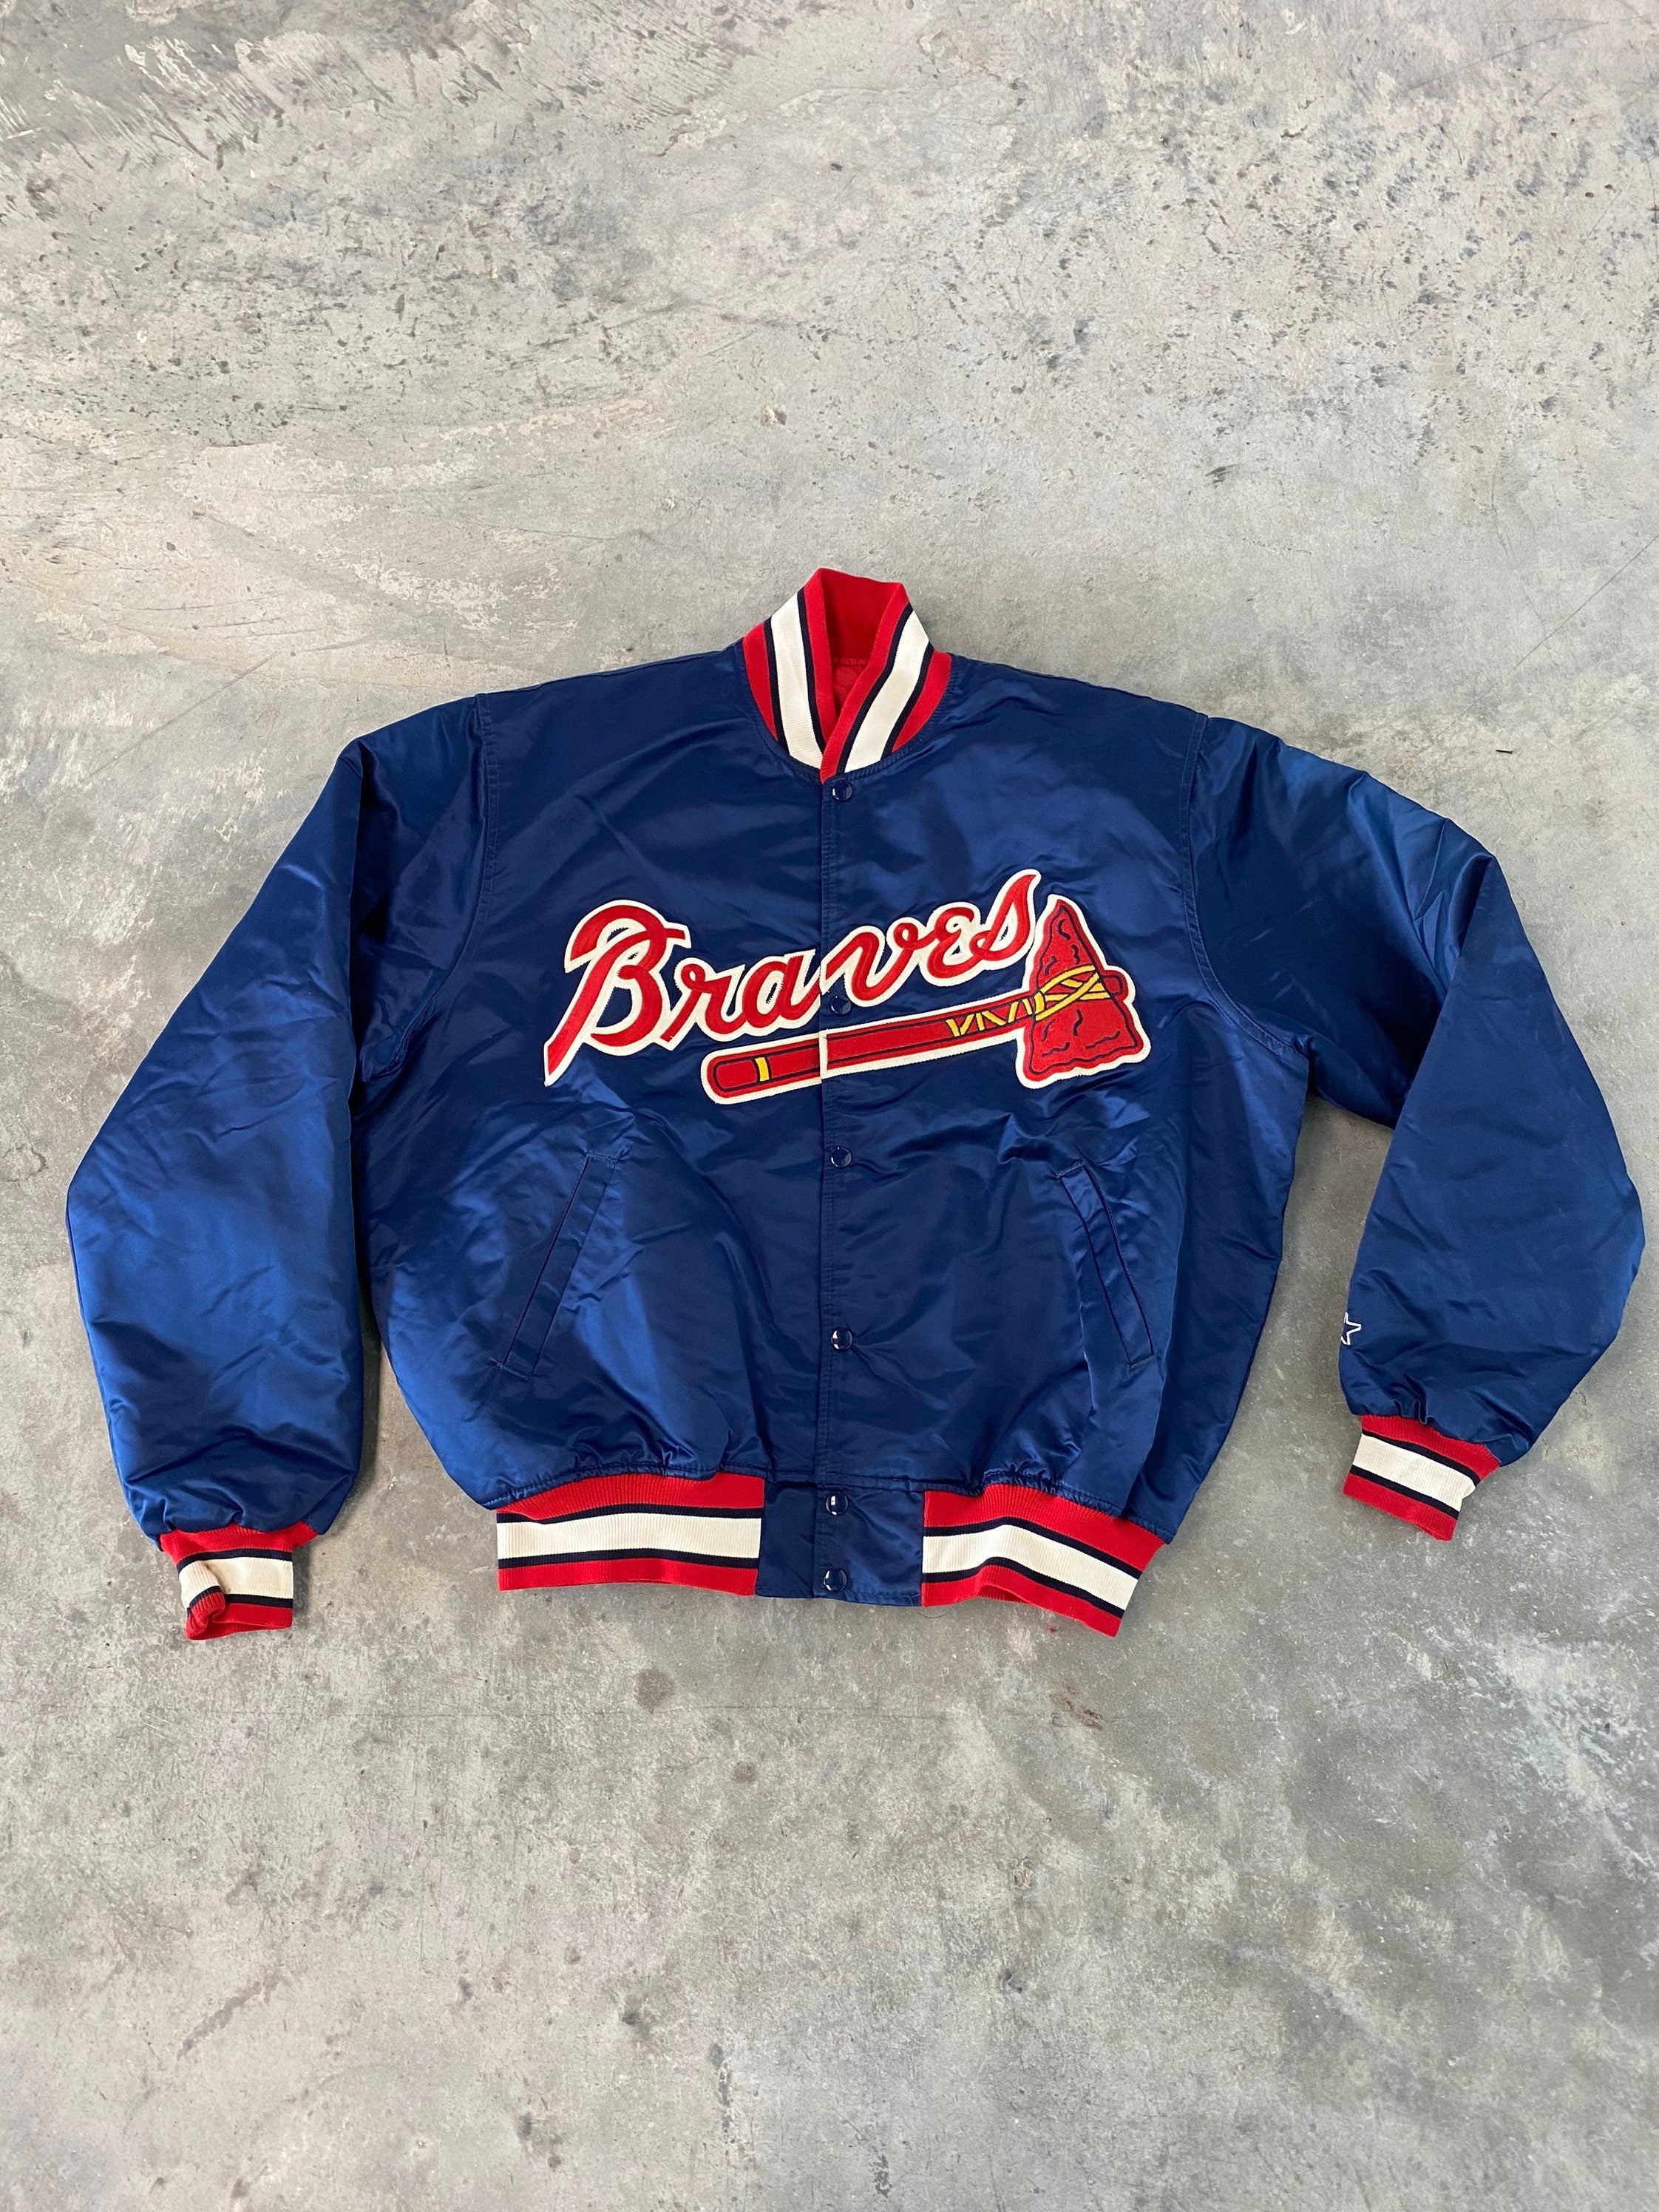 Vintage Atlanta Braves Starter Brand Soft Jersey Size 2X-Large